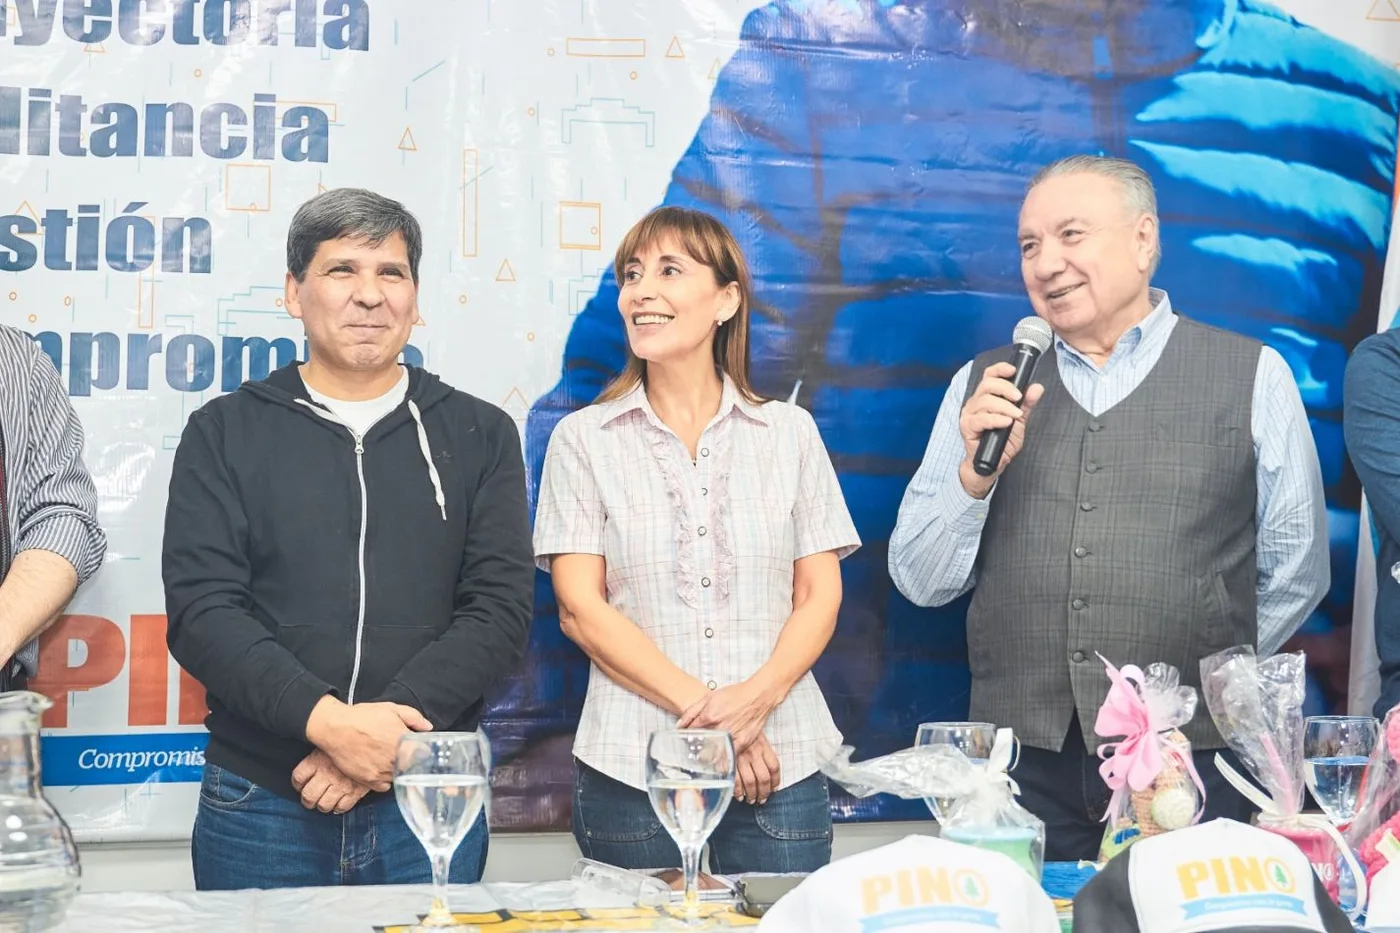 Los candidatos Pino, Ferreyra y López se presentaron en el Centro “Nueva Argentina”